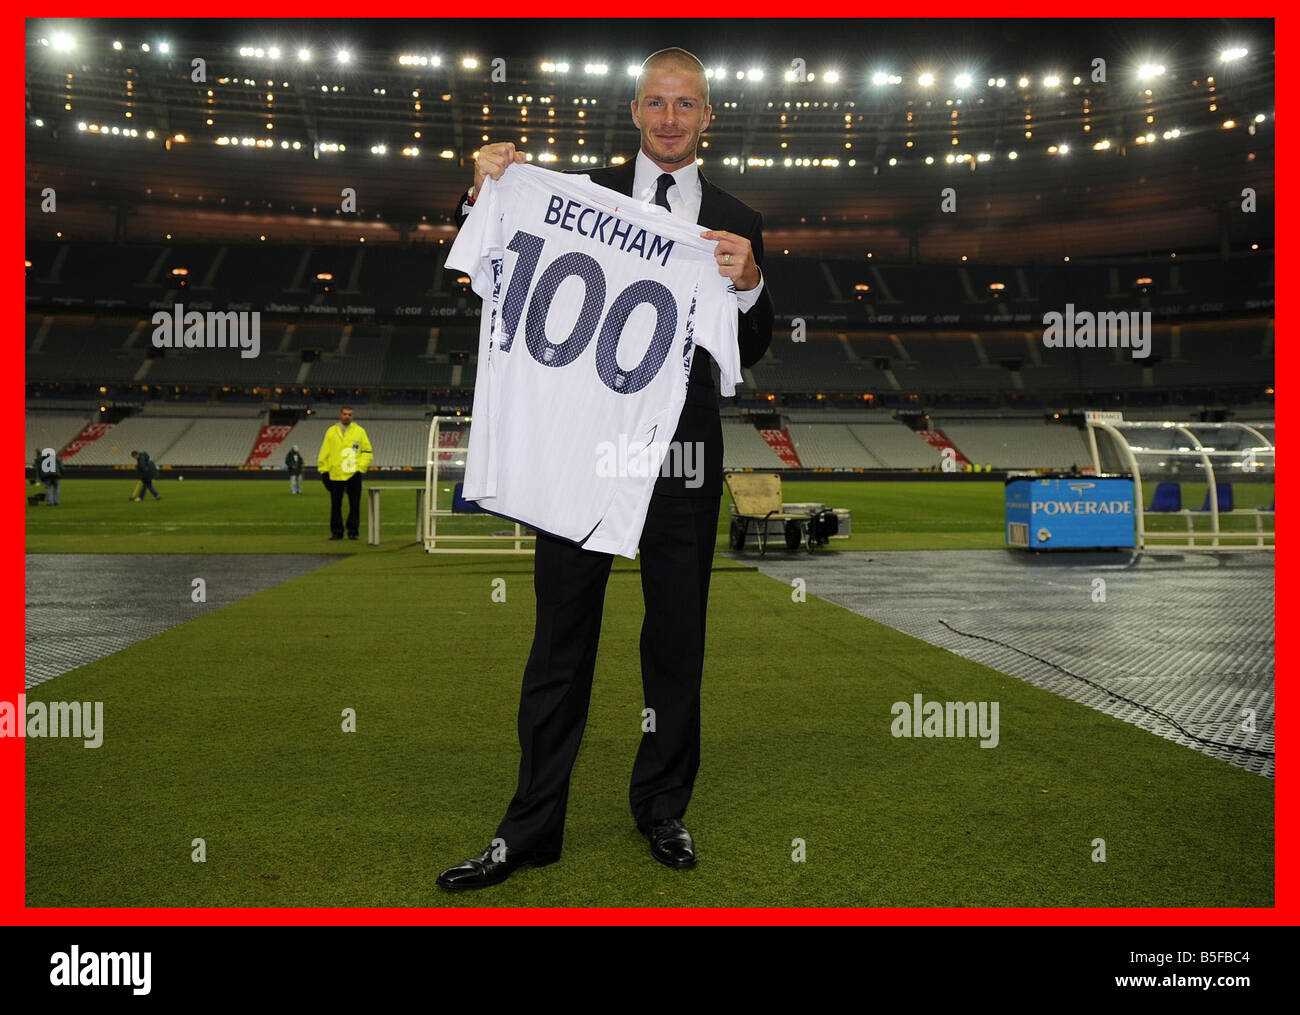 David Beckham im Bild im Stade de France Paris hält eine spezielle Gedenkmünze Shirt anlässlich seiner Leistung von 100 Länderspielen für England Stockfoto